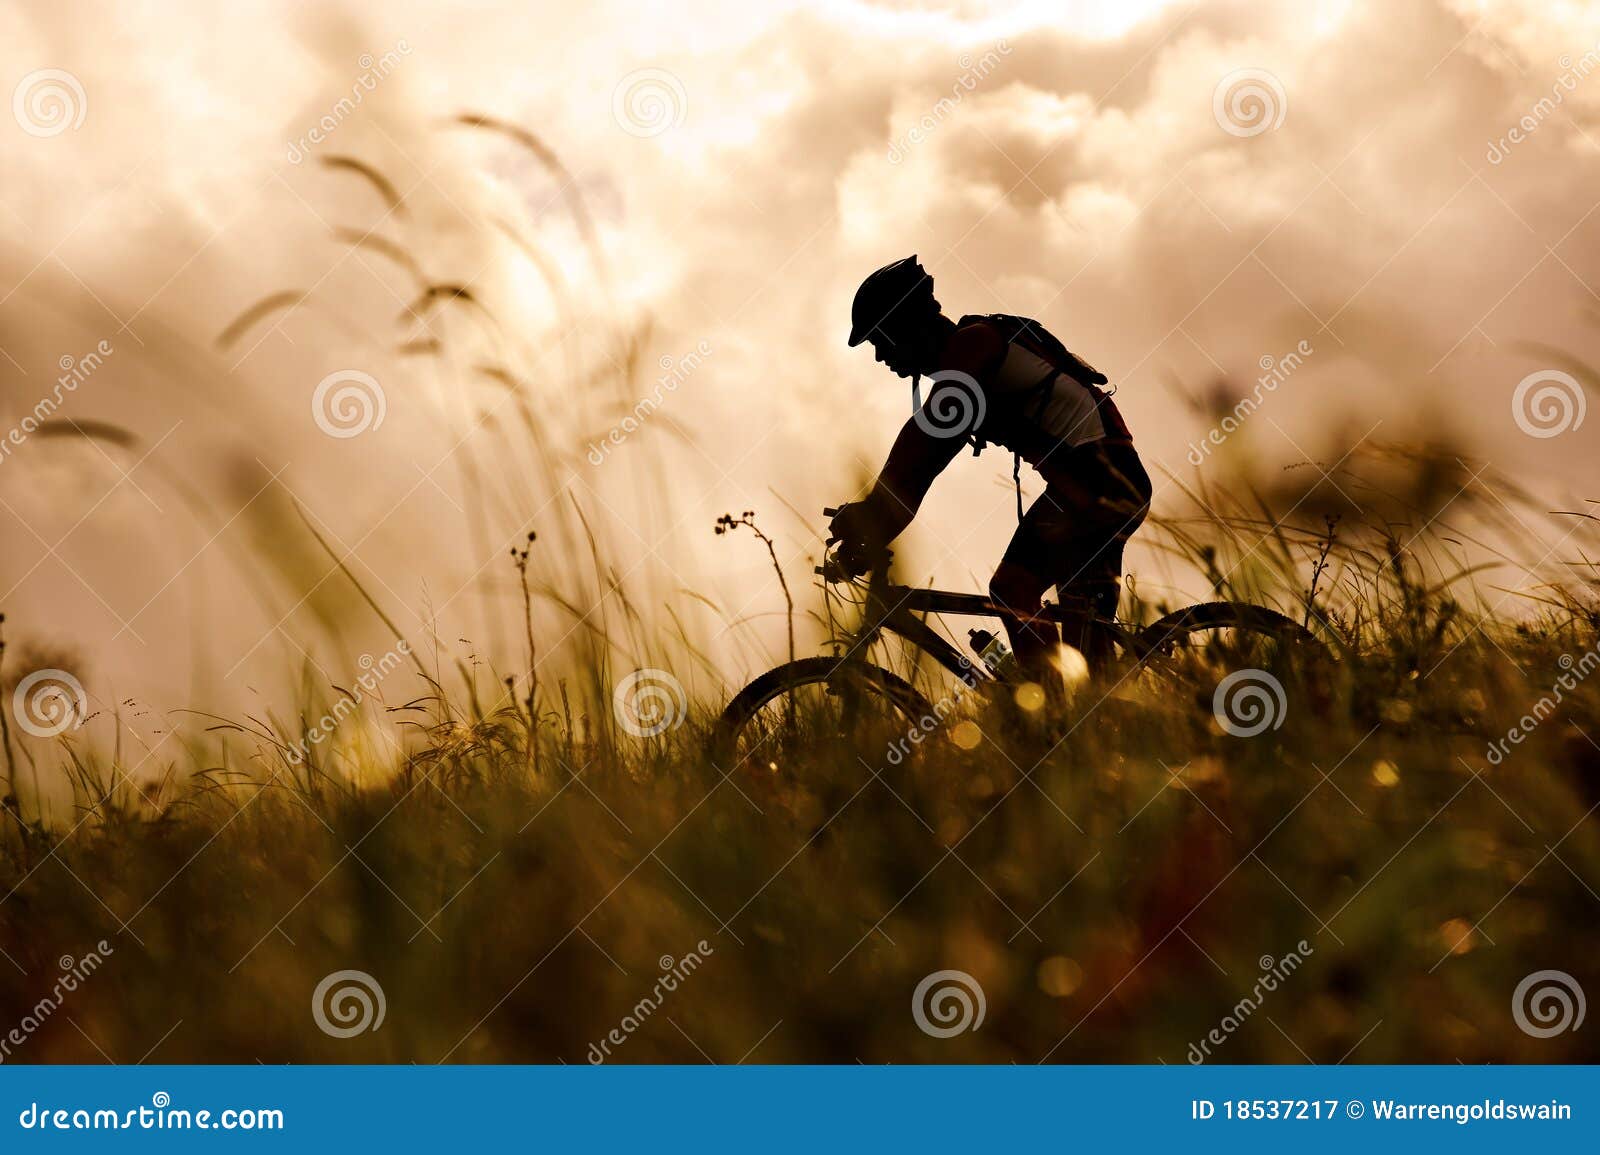 mountain bike man outdoors